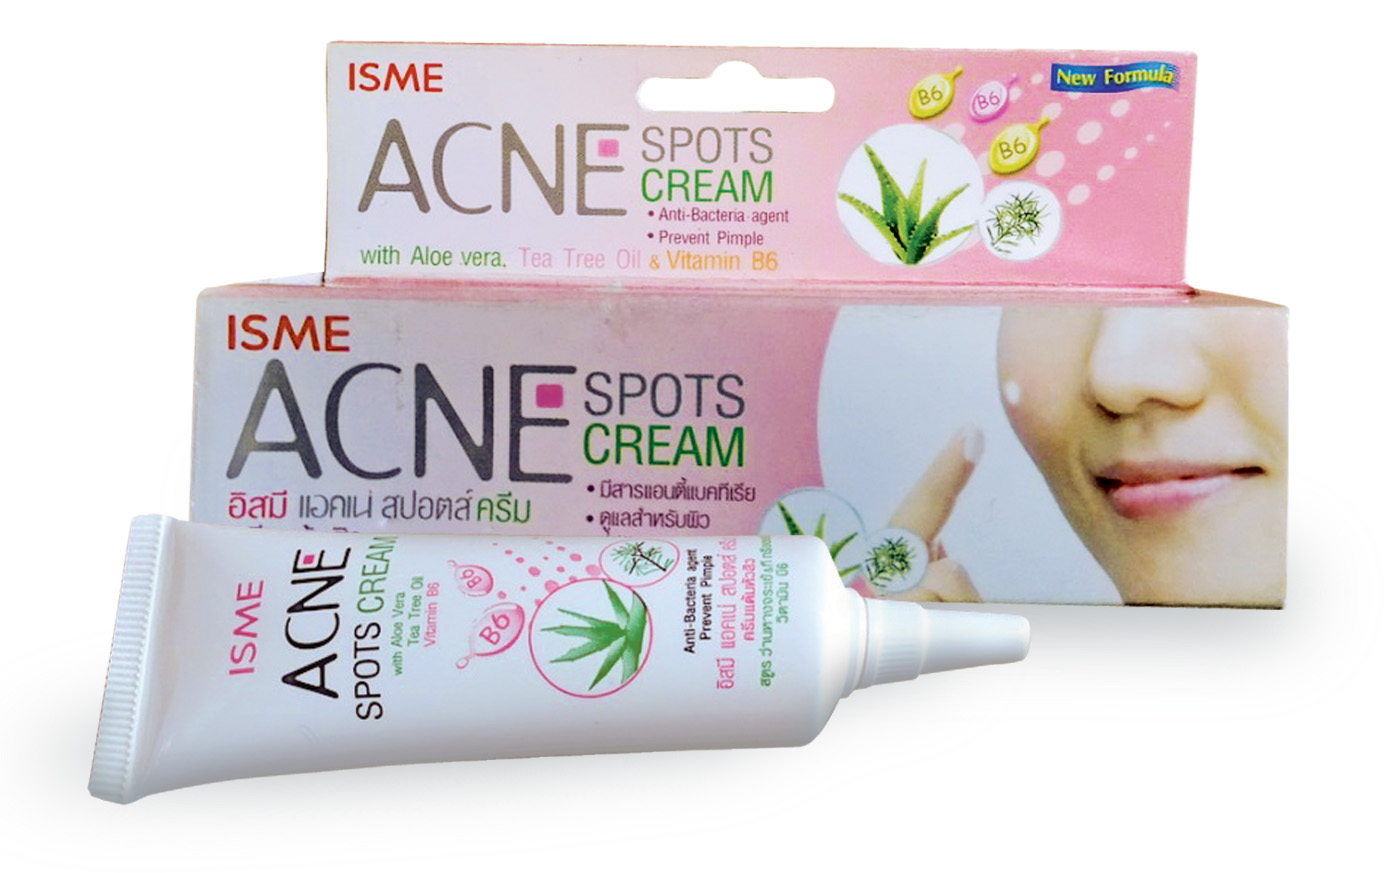 Лечебный крем против прыщей, акне и угревой сыпи Isme Acne Spots Cream	